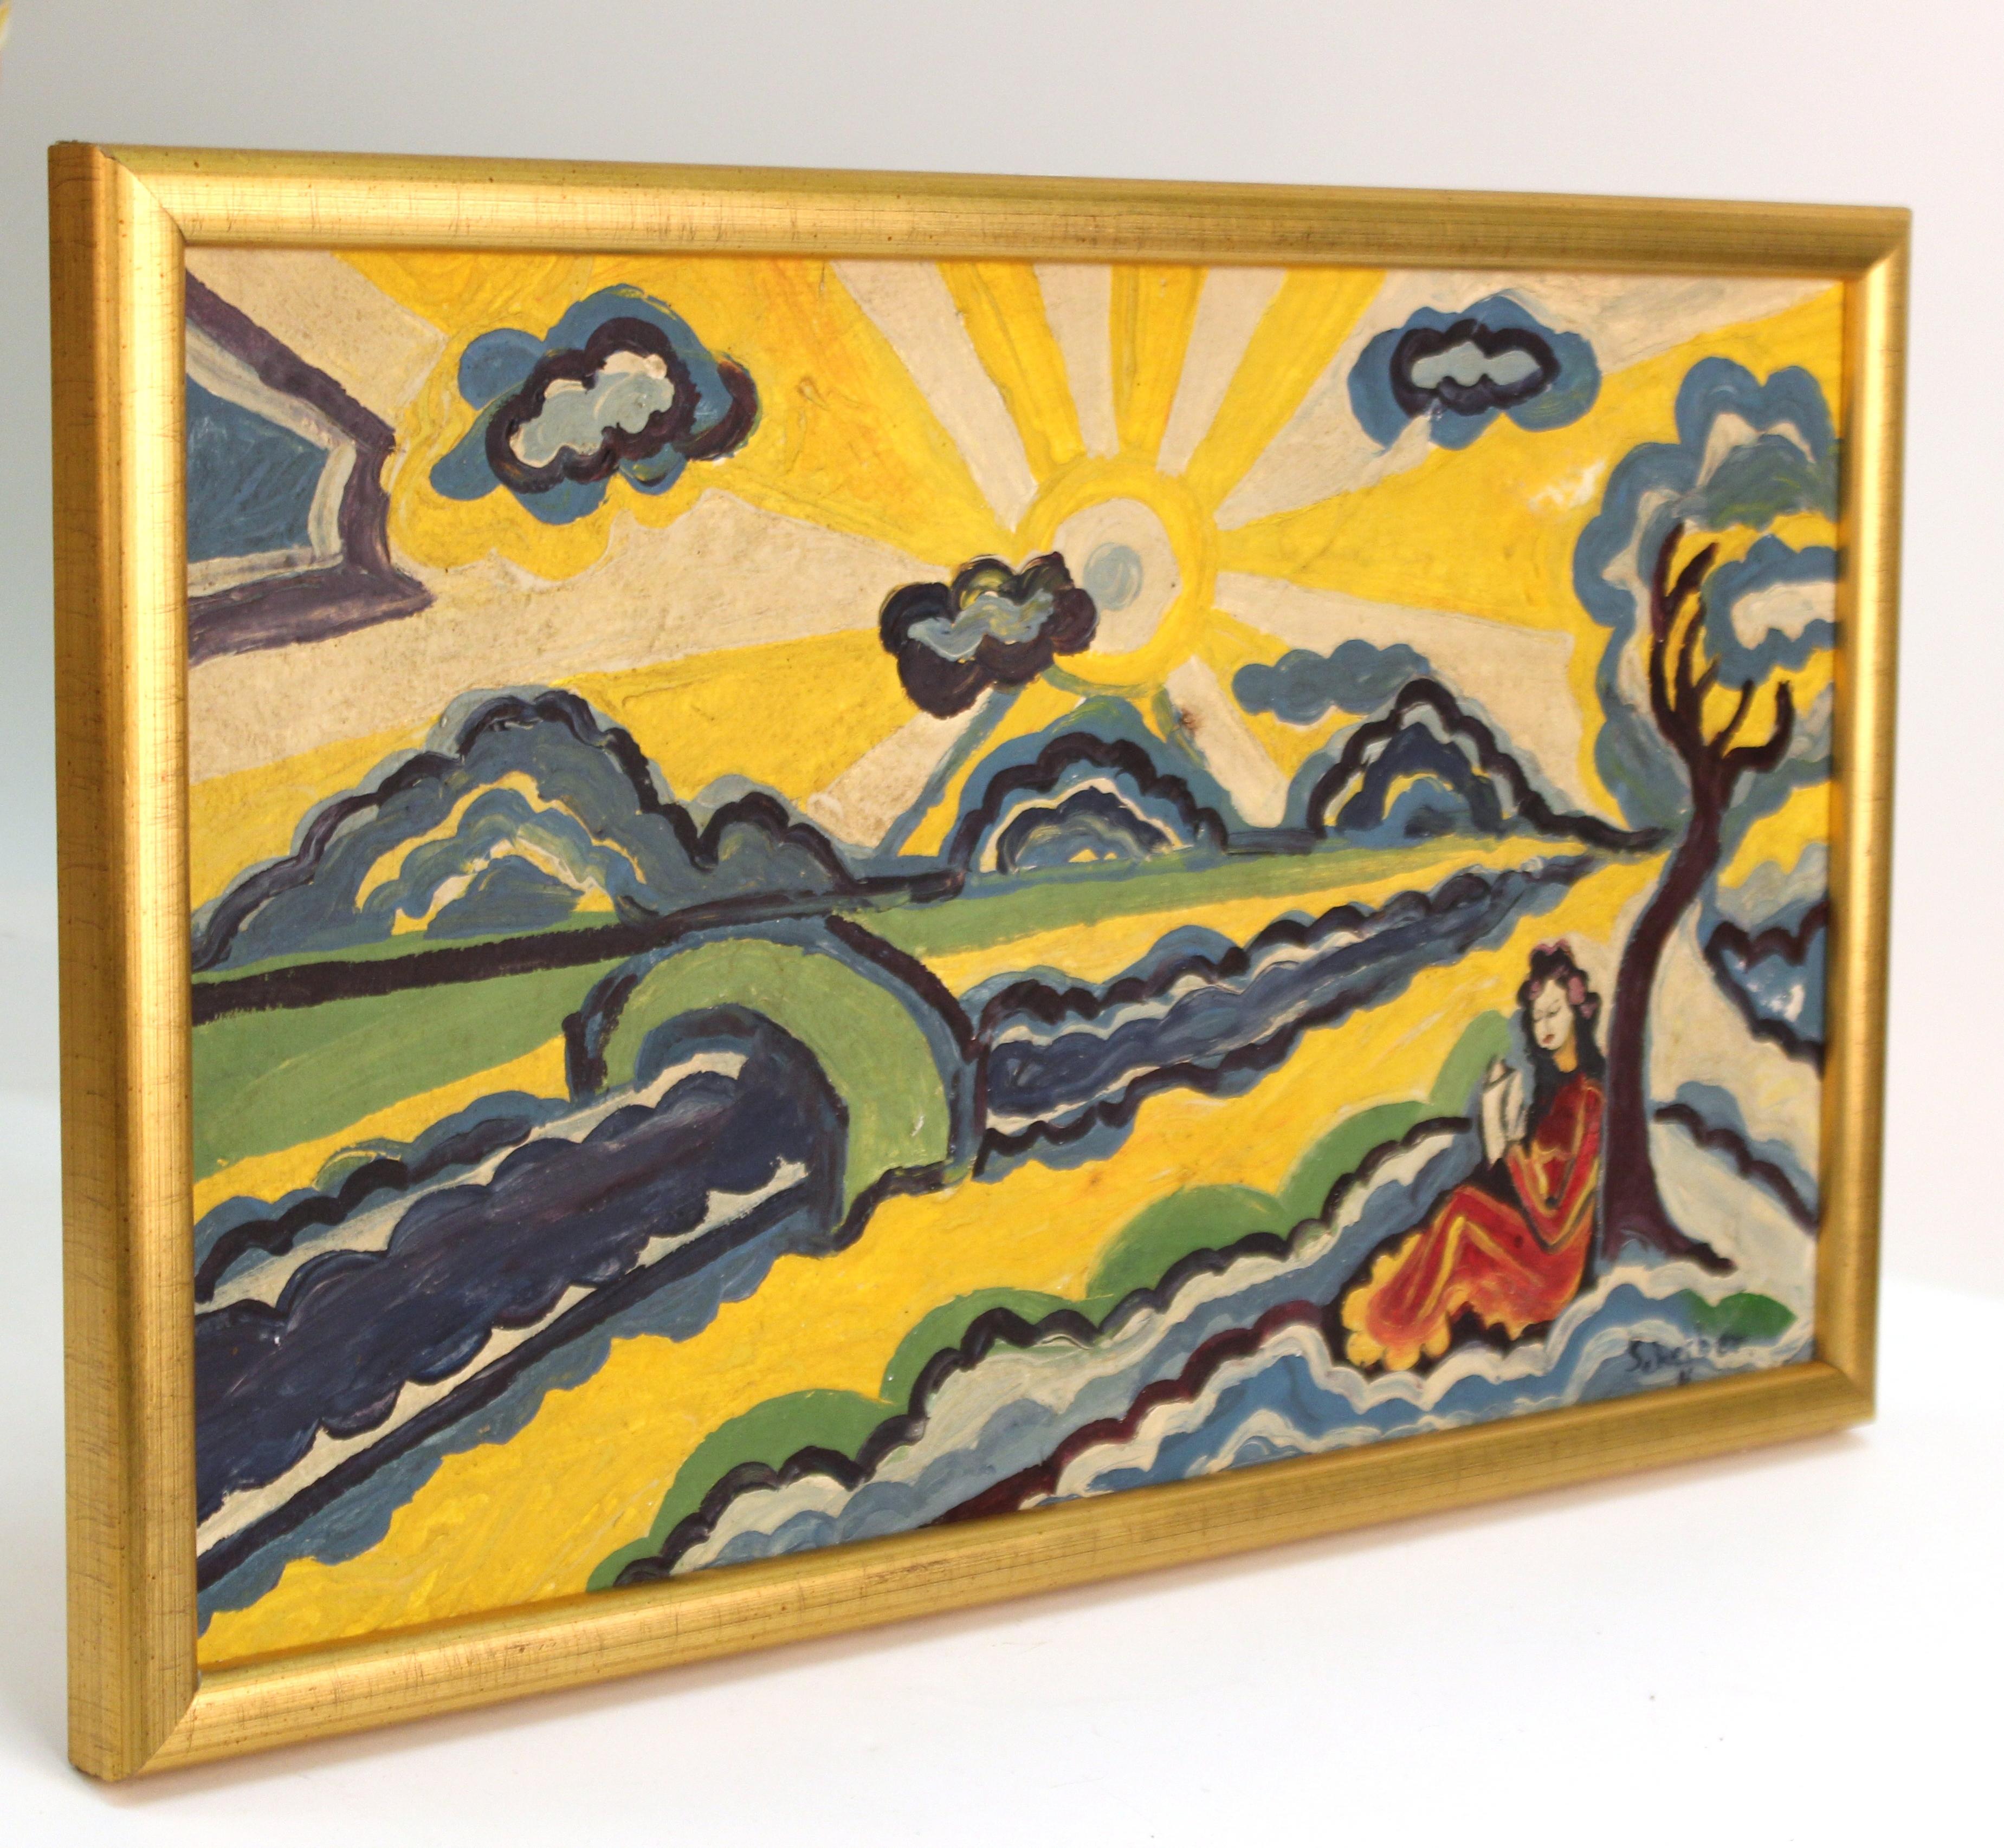 Modernistisches Landschaftsgemälde einer lesenden Frau im Sonnenschein, das dem ungarischen Maler der Moderne Hugo Scheiber (1873 - 1950) zugeschrieben wird. Das auf Leinwand ausgeführte und mit einem vergoldeten Holzrahmen gerahmte Werk stammt